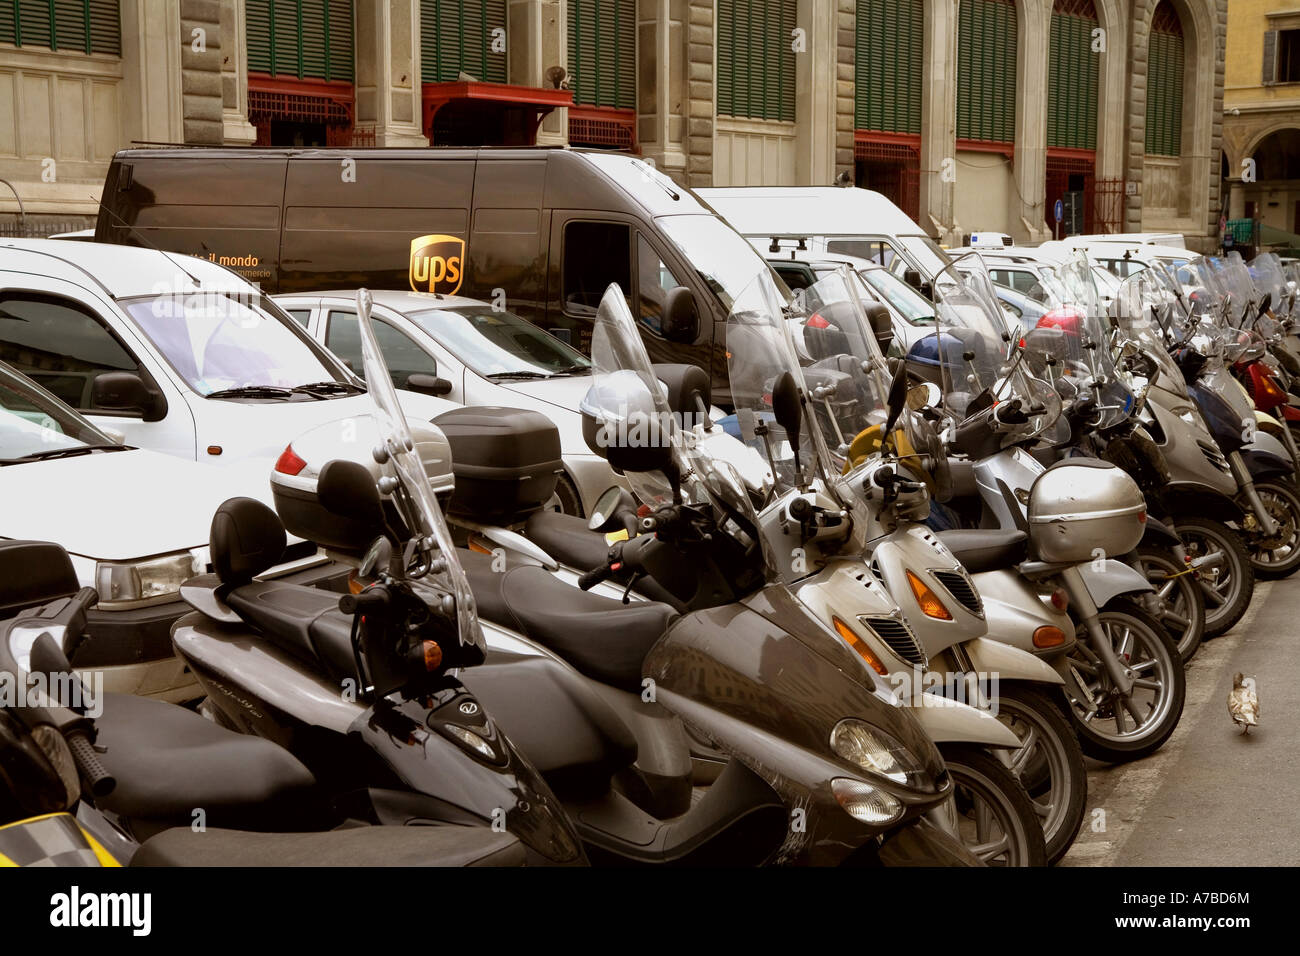 Consegna UPS carrello coccola nel parcheggio posto tra i motocicli nel parcheggio a Firenze Italia Foto Stock